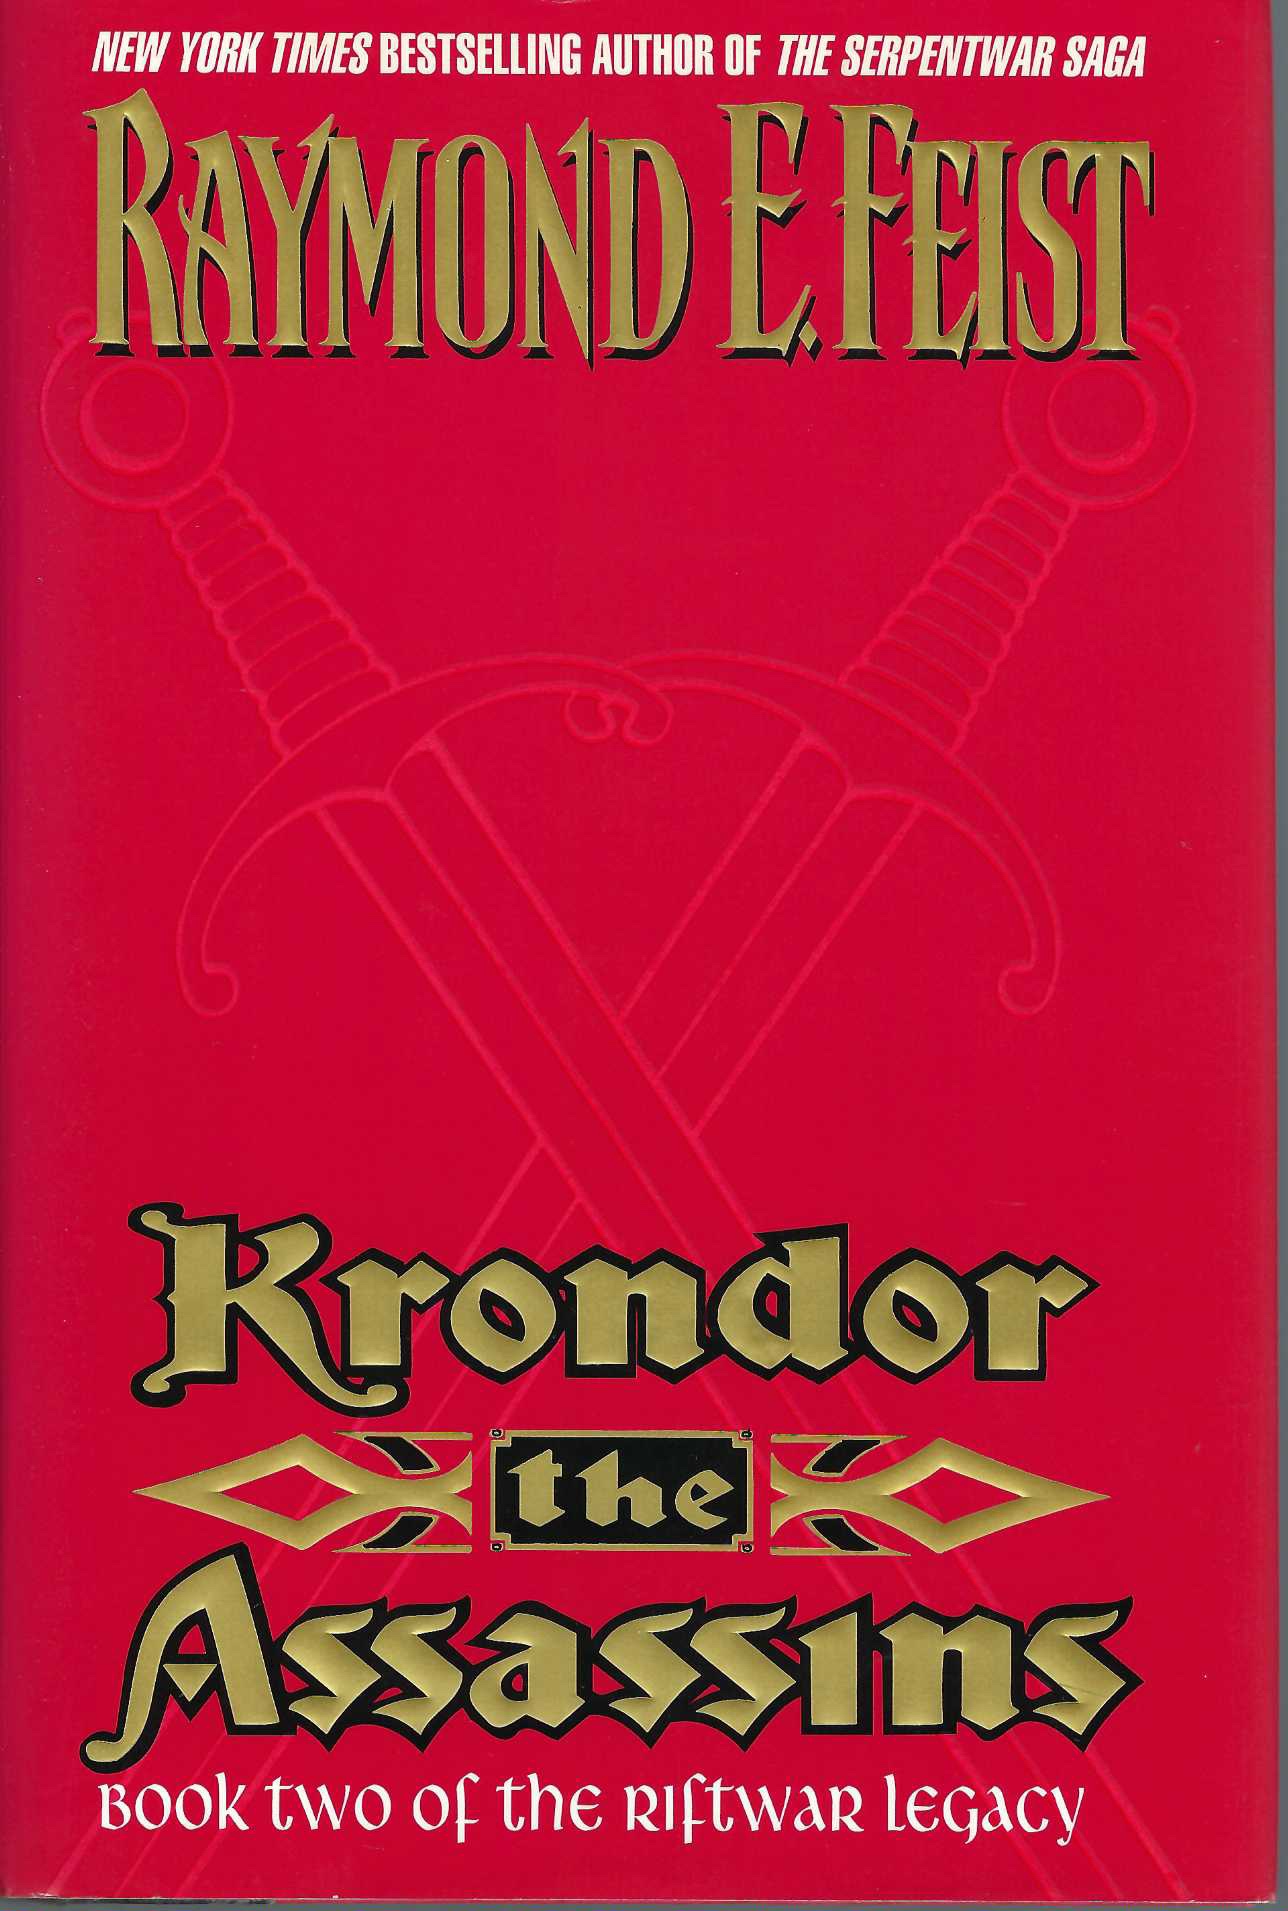 FEIST, RAYMOND E - Krondor the Assassins: Book Two of the Riftwar Legacy